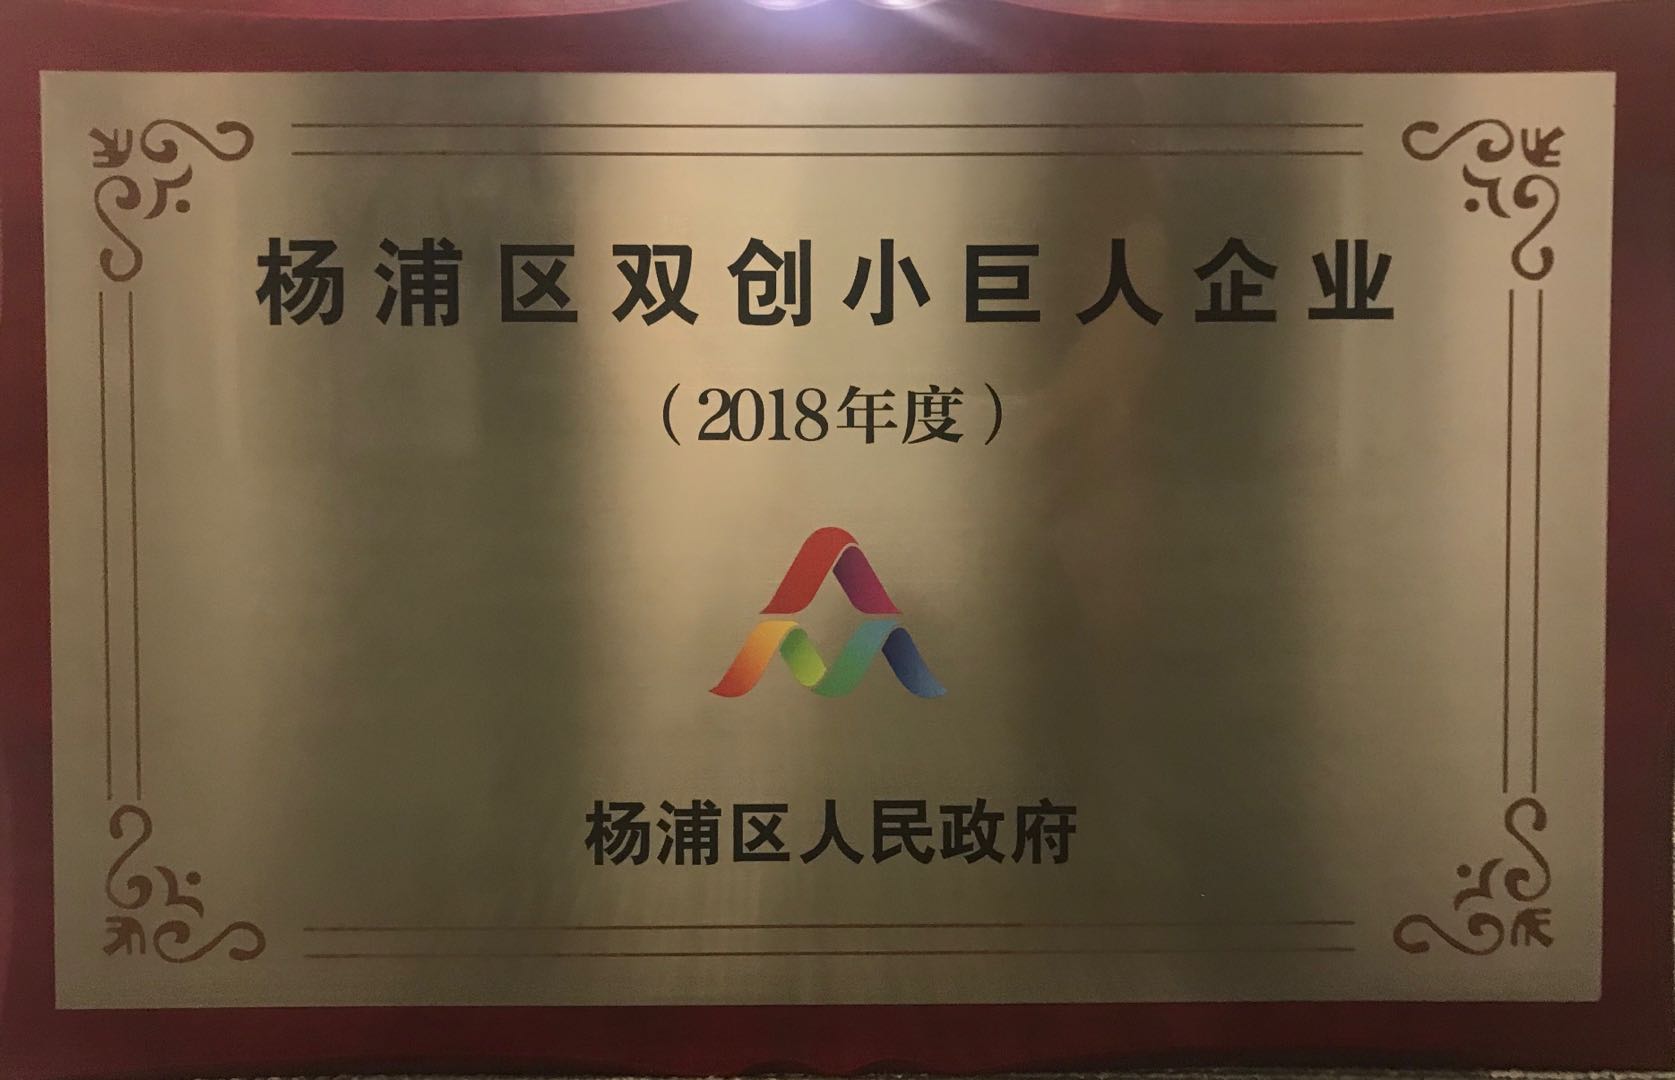 信用算力获选上海市杨浦区”双创小巨人“企业